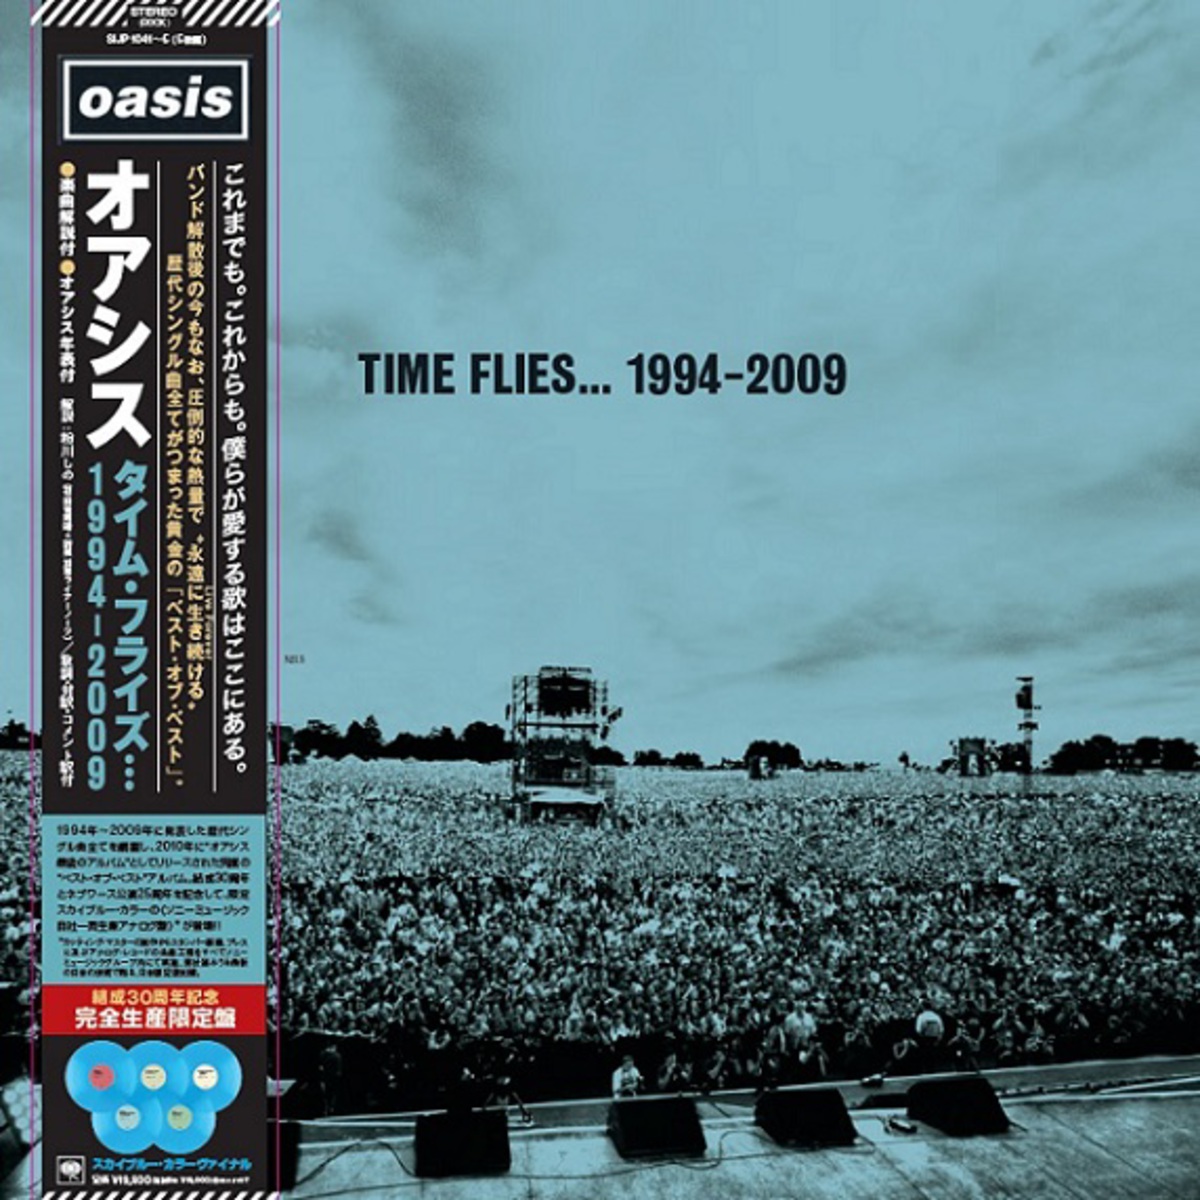 OASIS、ベスト盤 『Time Flies... 1994-2009』がスカイ・ブルー